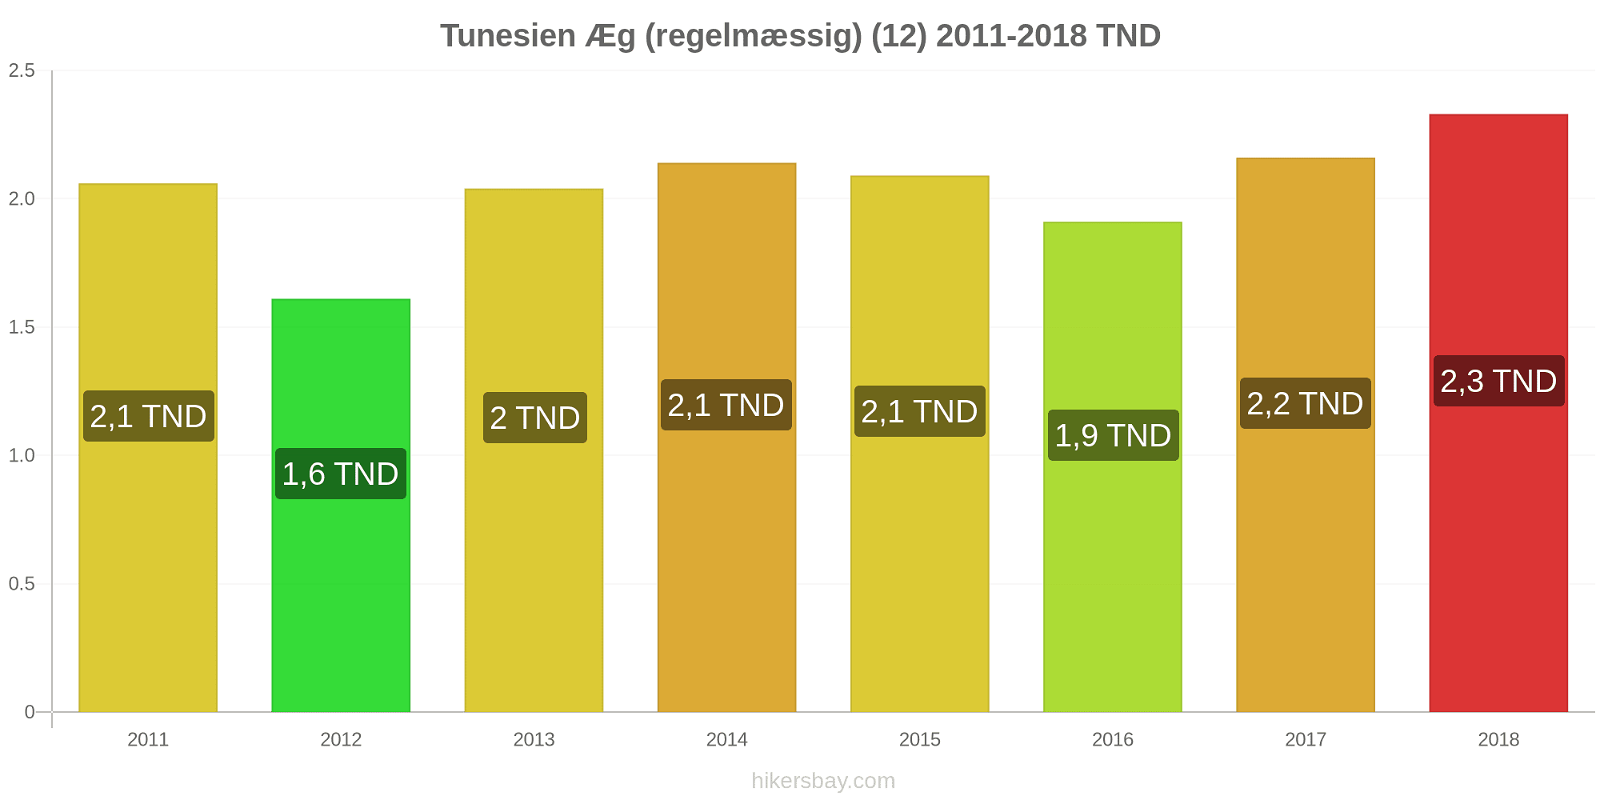 Tunesien prisændringer Æg (almindelige) (12) hikersbay.com